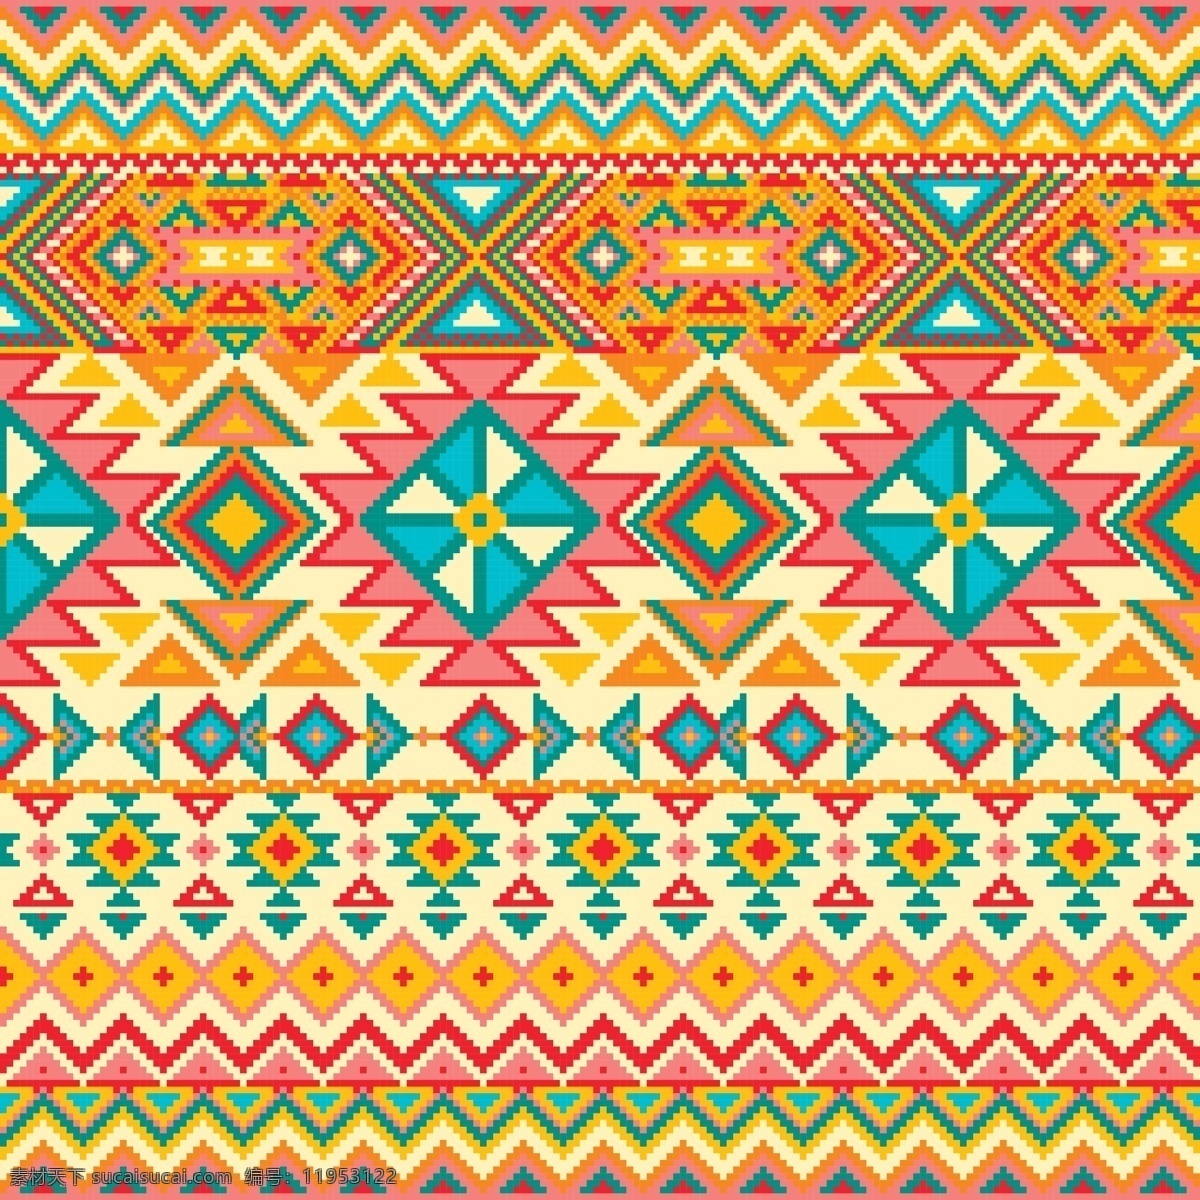 具有 几何 图案 织物 纹理 背景 模式 卡 装饰 三角 平面 墨西哥 印度 非洲 现代 马赛克 像素 布 无缝 纺织 美国 瓦 阿兹特克